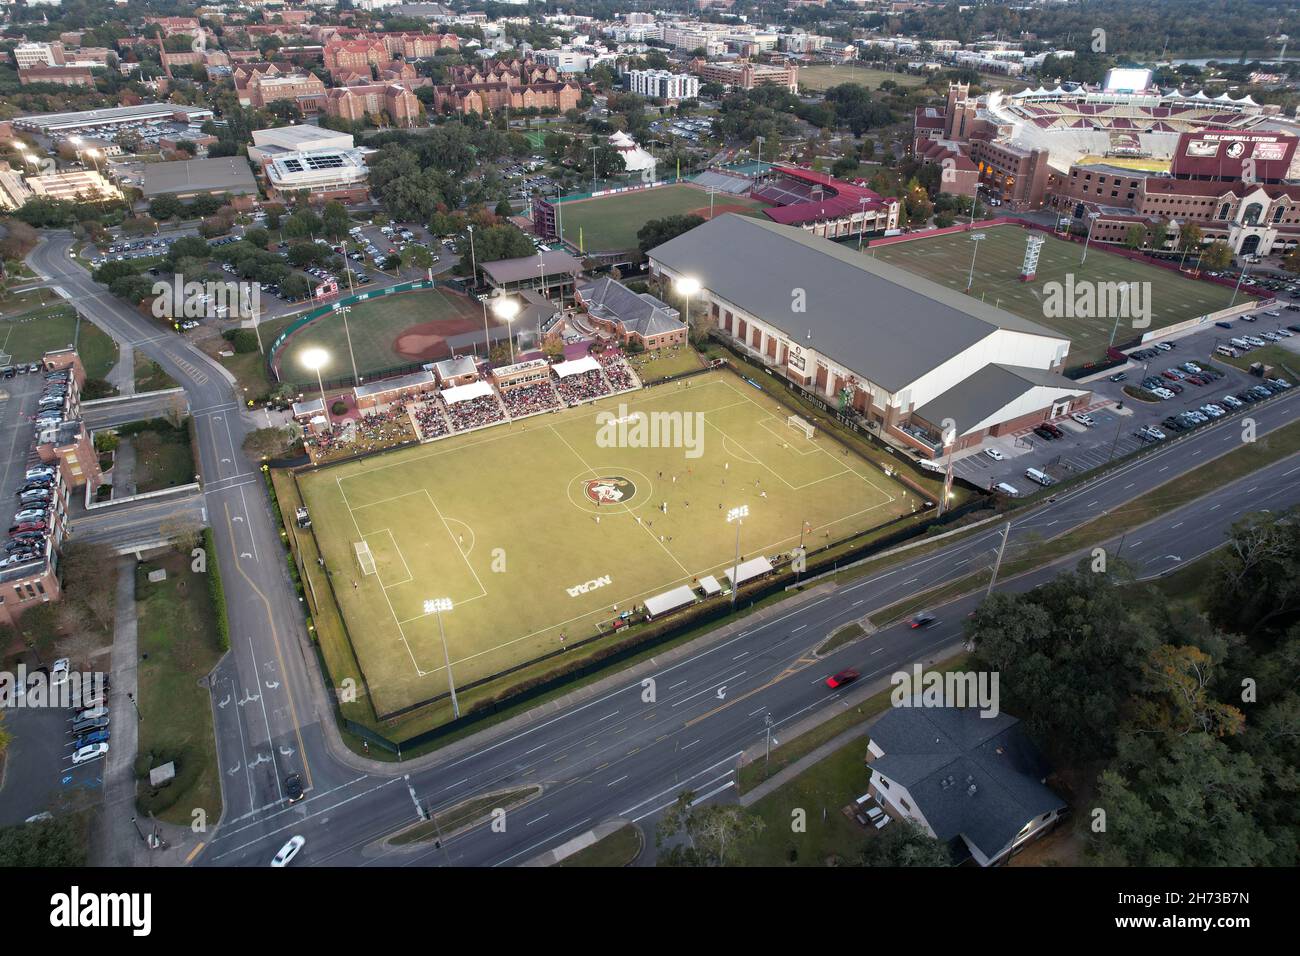 Une vue aérienne du complexe de football Seminole sur le campus de l'Université d'État de Floride, le vendredi 19 novembre 2021, à Tallahassee,Fla c'est la maison fa Banque D'Images